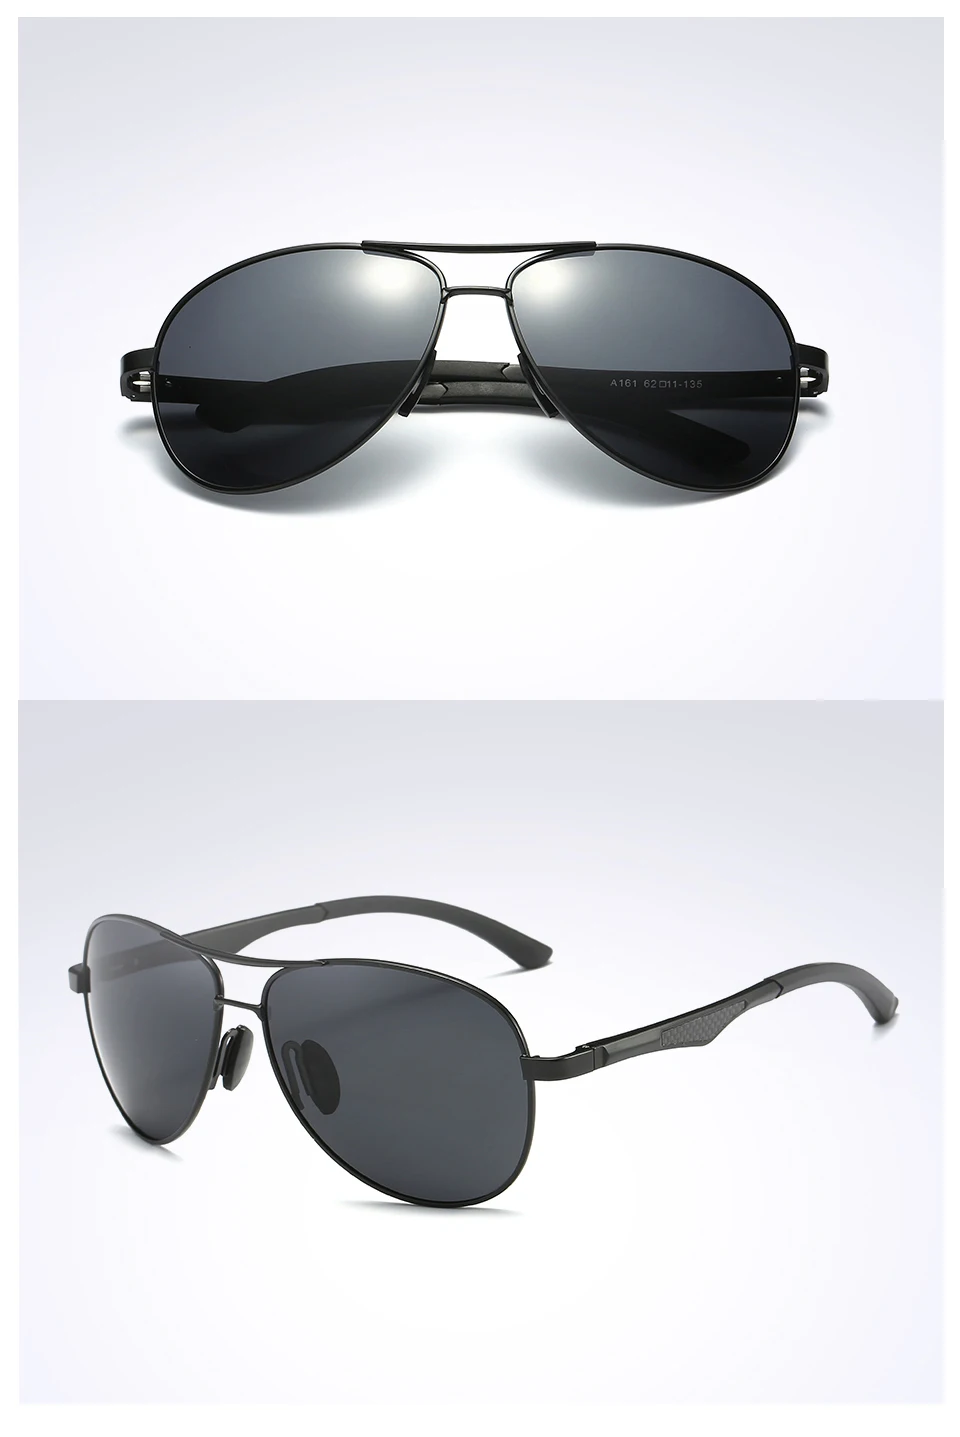 ELITERA, модные классические солнцезащитные очки пилота для мужчин и женщин, поляризованные очки для улицы